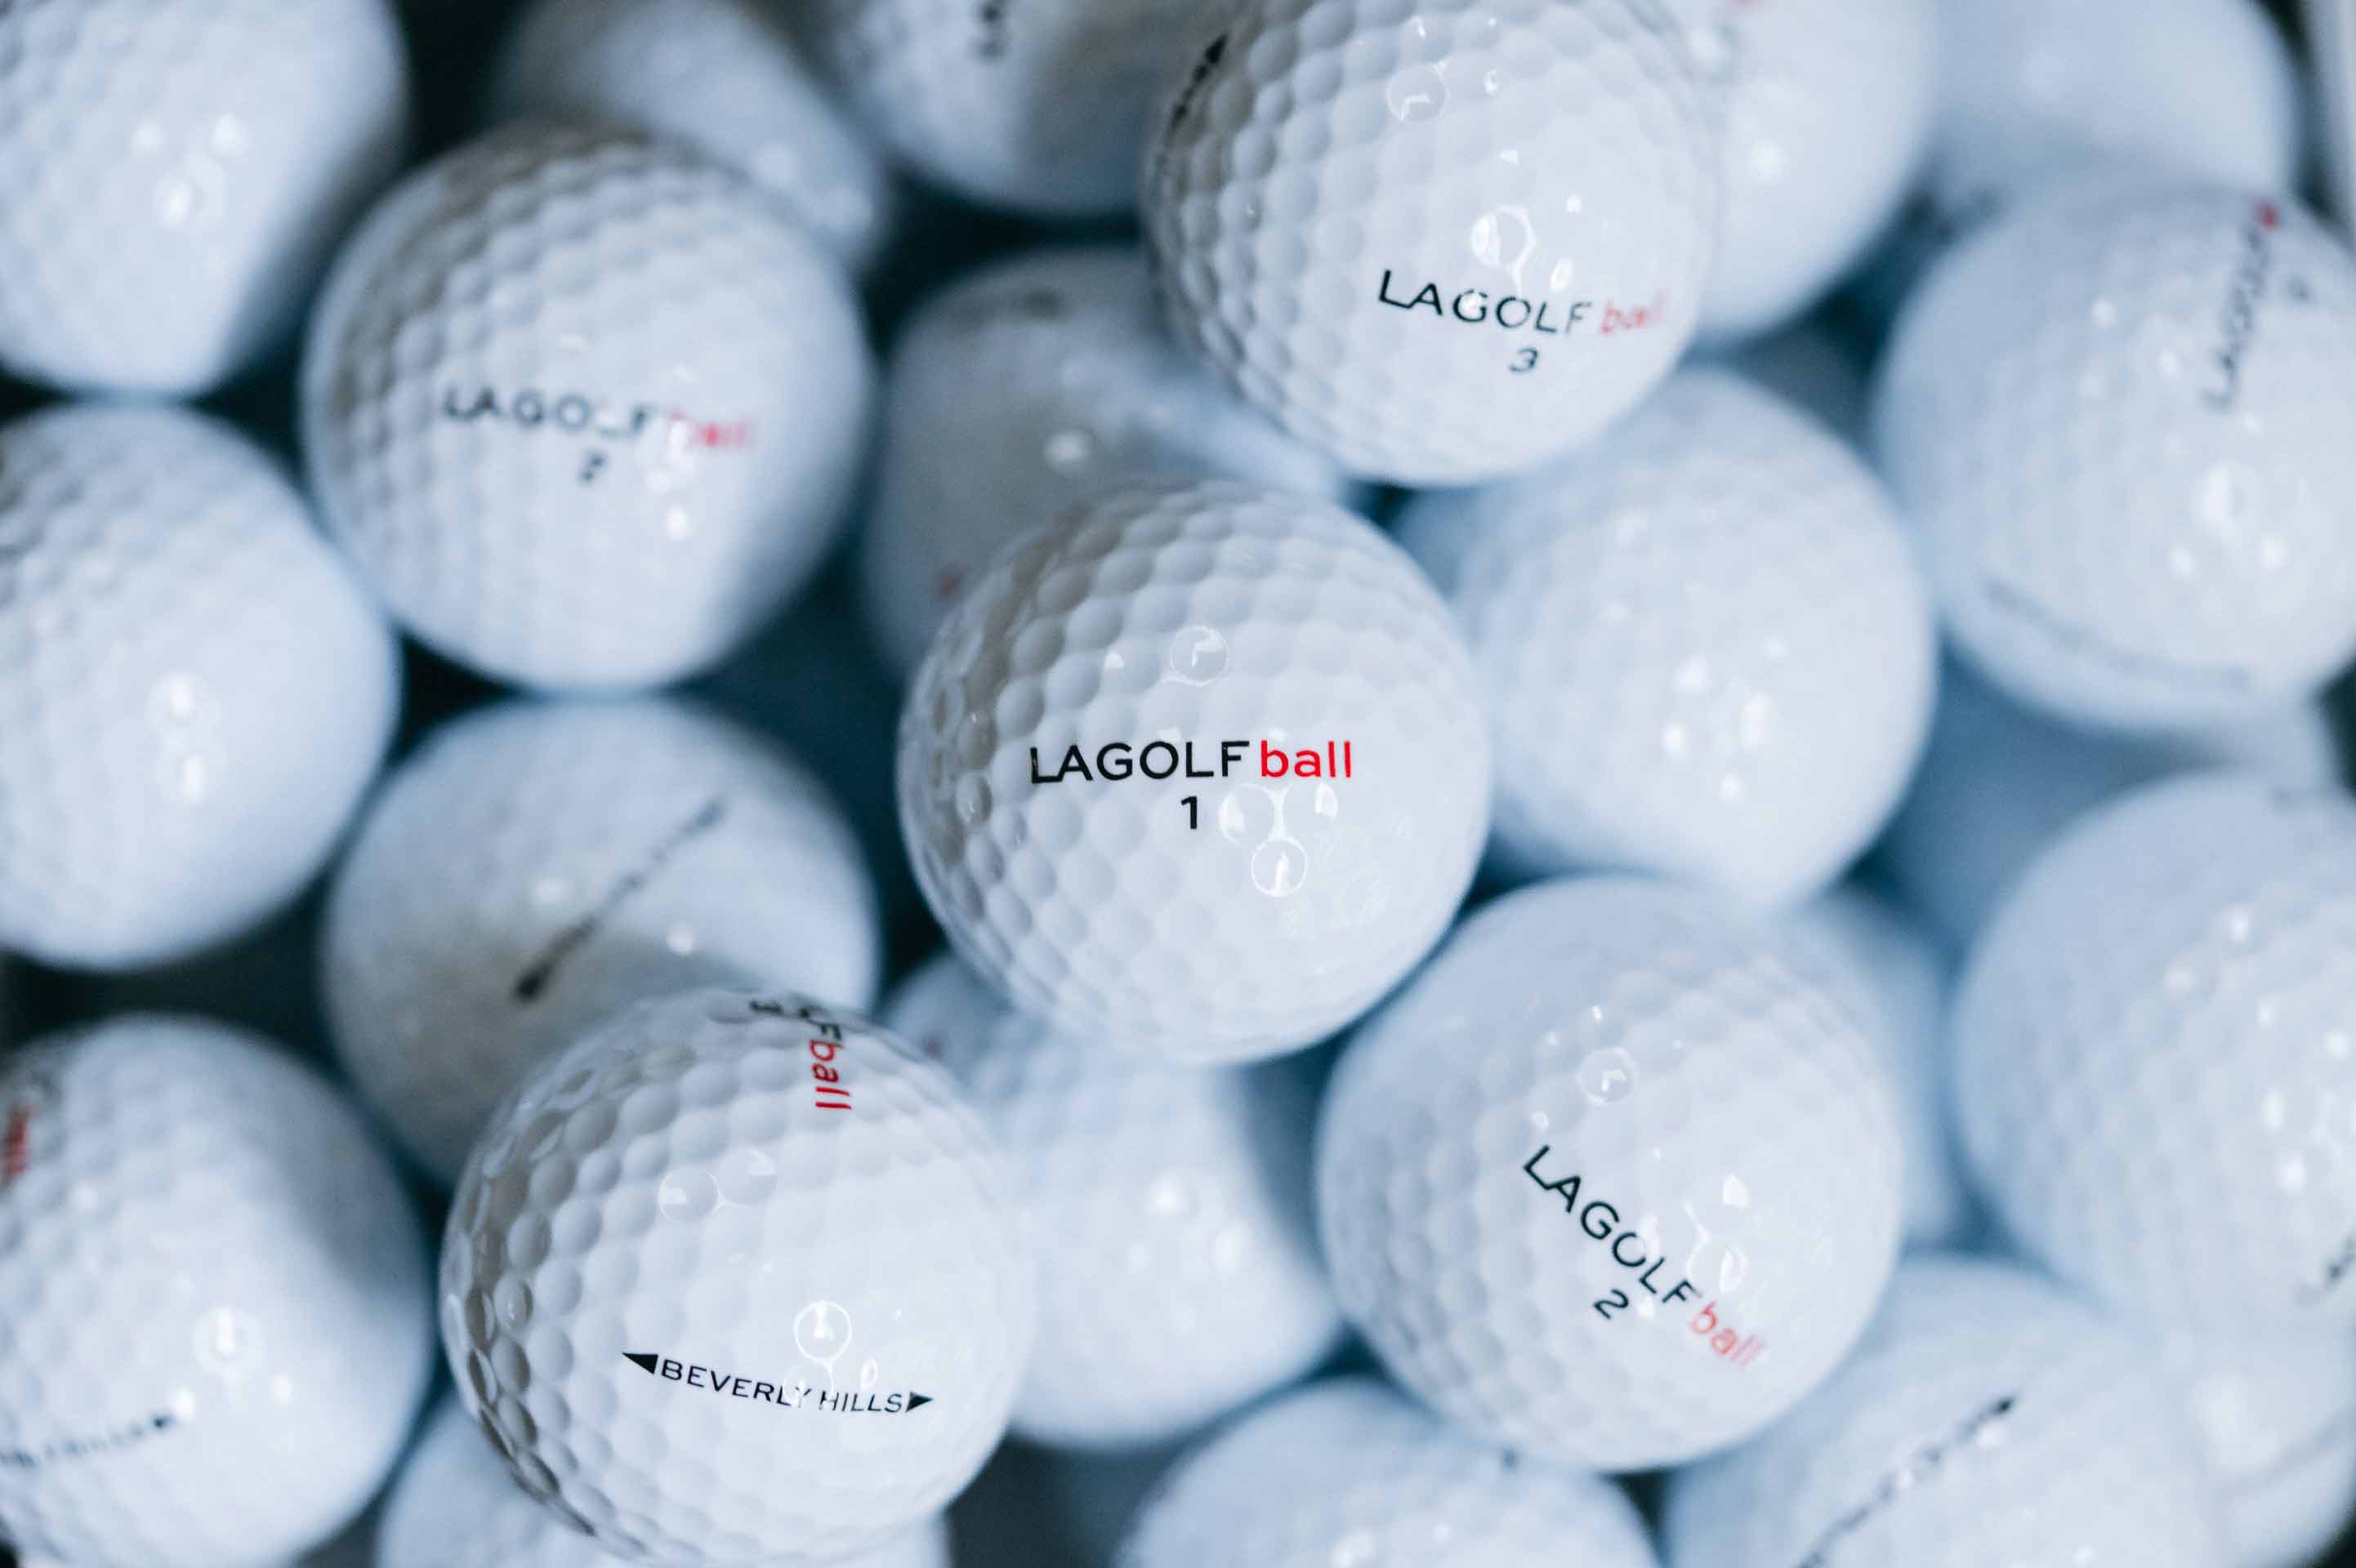 LA Golf balls